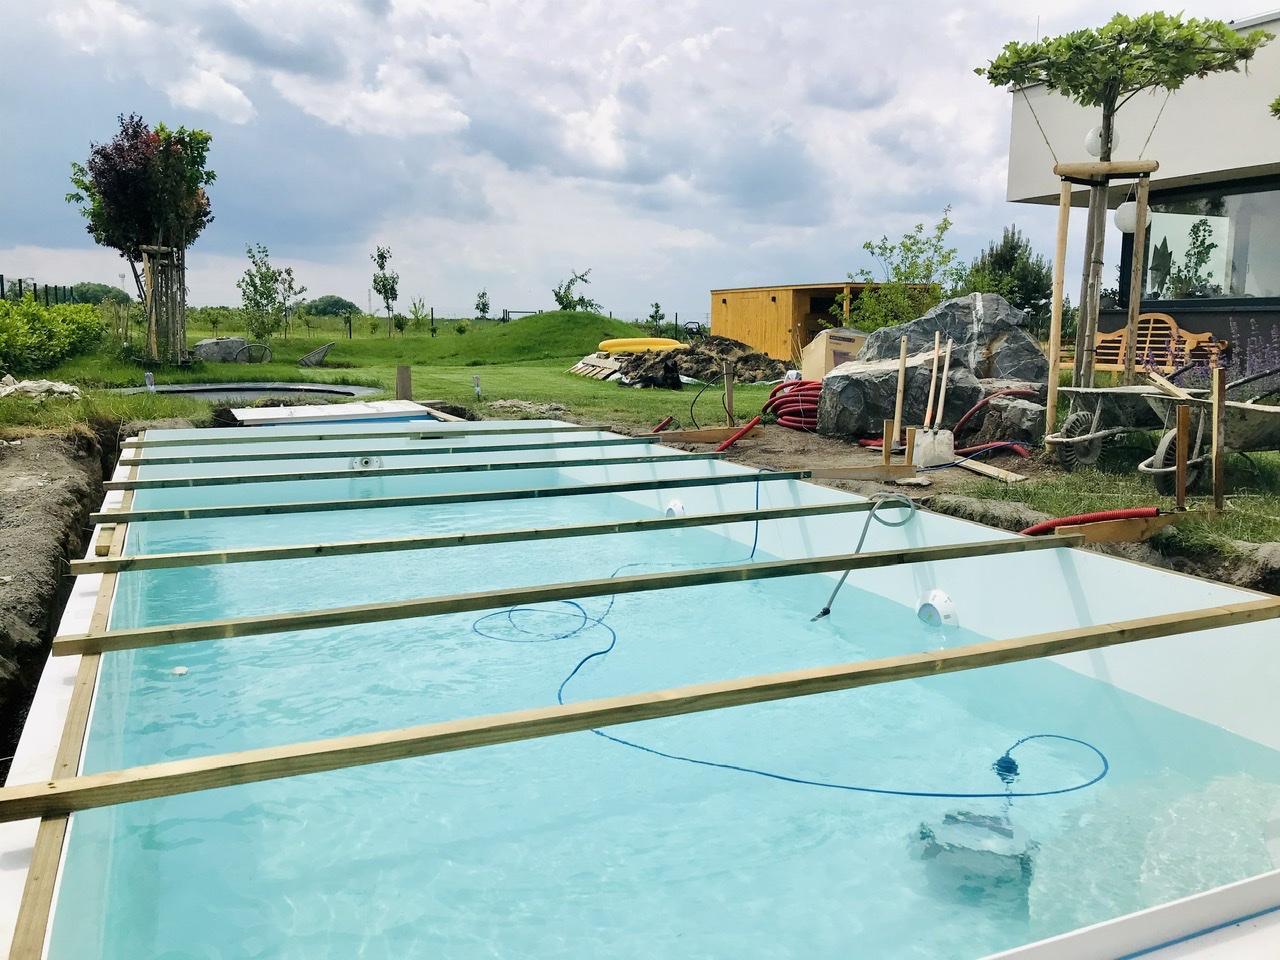 Naše L-ko - 2021 - stále dokončujeme - 9 deň - Betonovanie lemu bazéna, každý den o 1 schodík betonu a vody viac + zapojili sme bazénový vysavač na čistenie dna